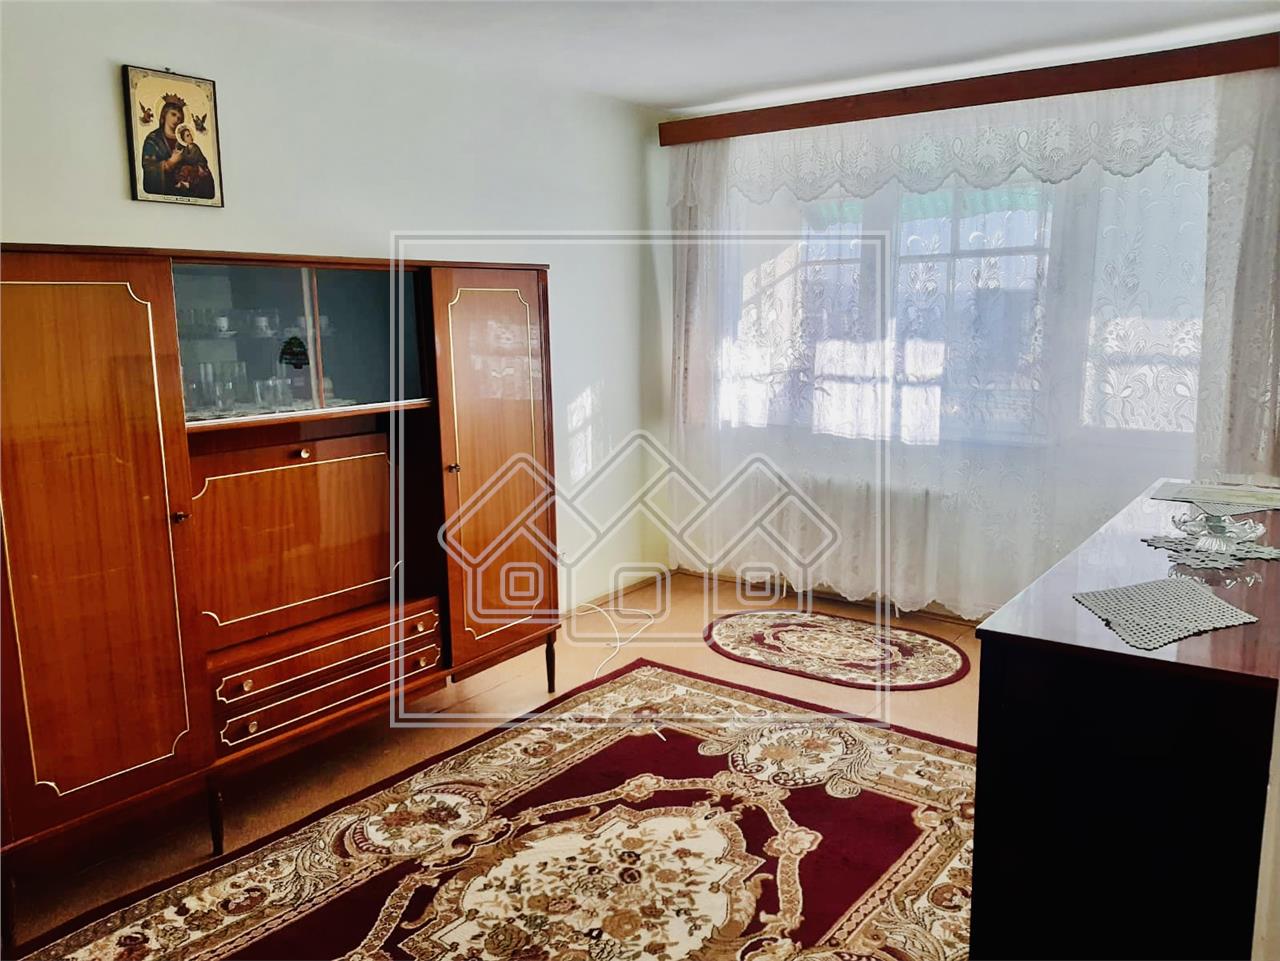 Apartament de vanzare in Sibiu -3 camere, balcon si pivnita - Ciresica